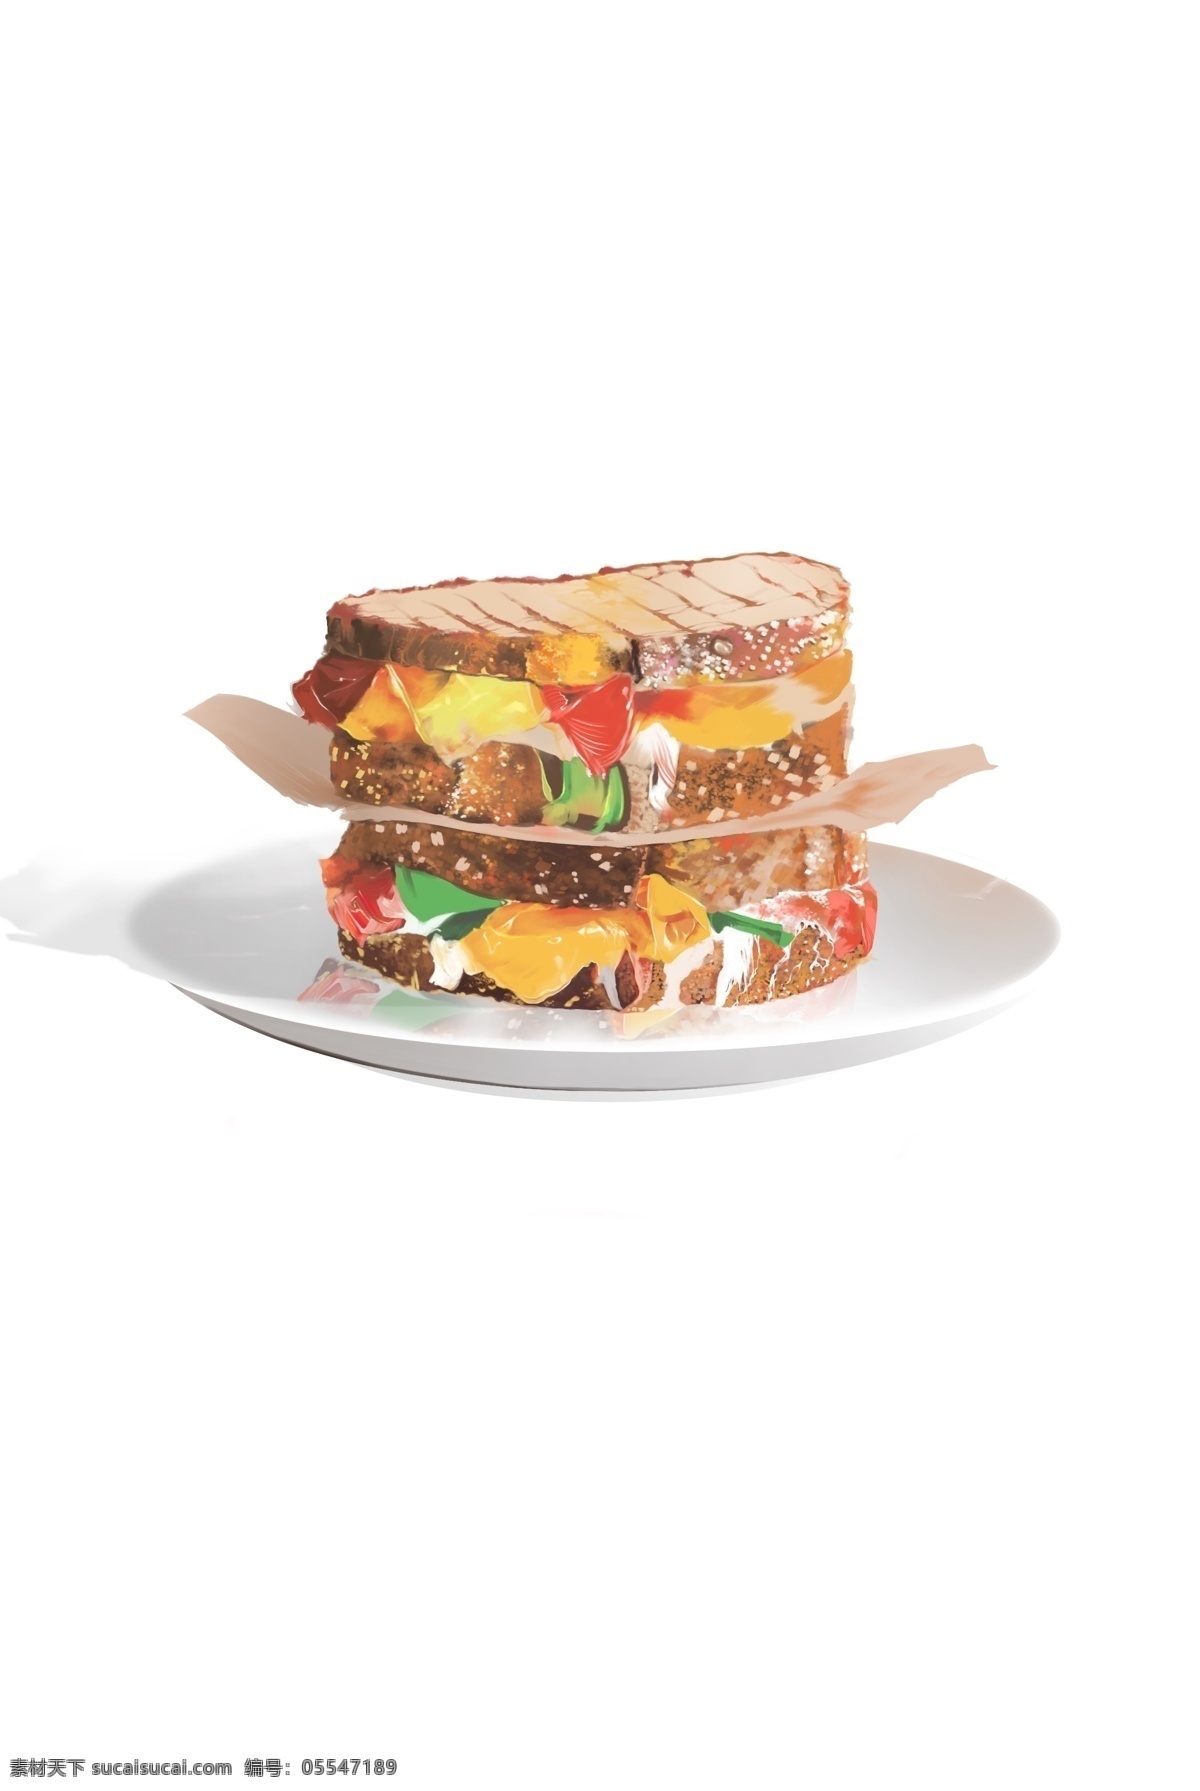 美味 汉堡包 手绘 食物 装饰 元素 美食 早餐 面包 装饰元素 手绘美食 白色盘子